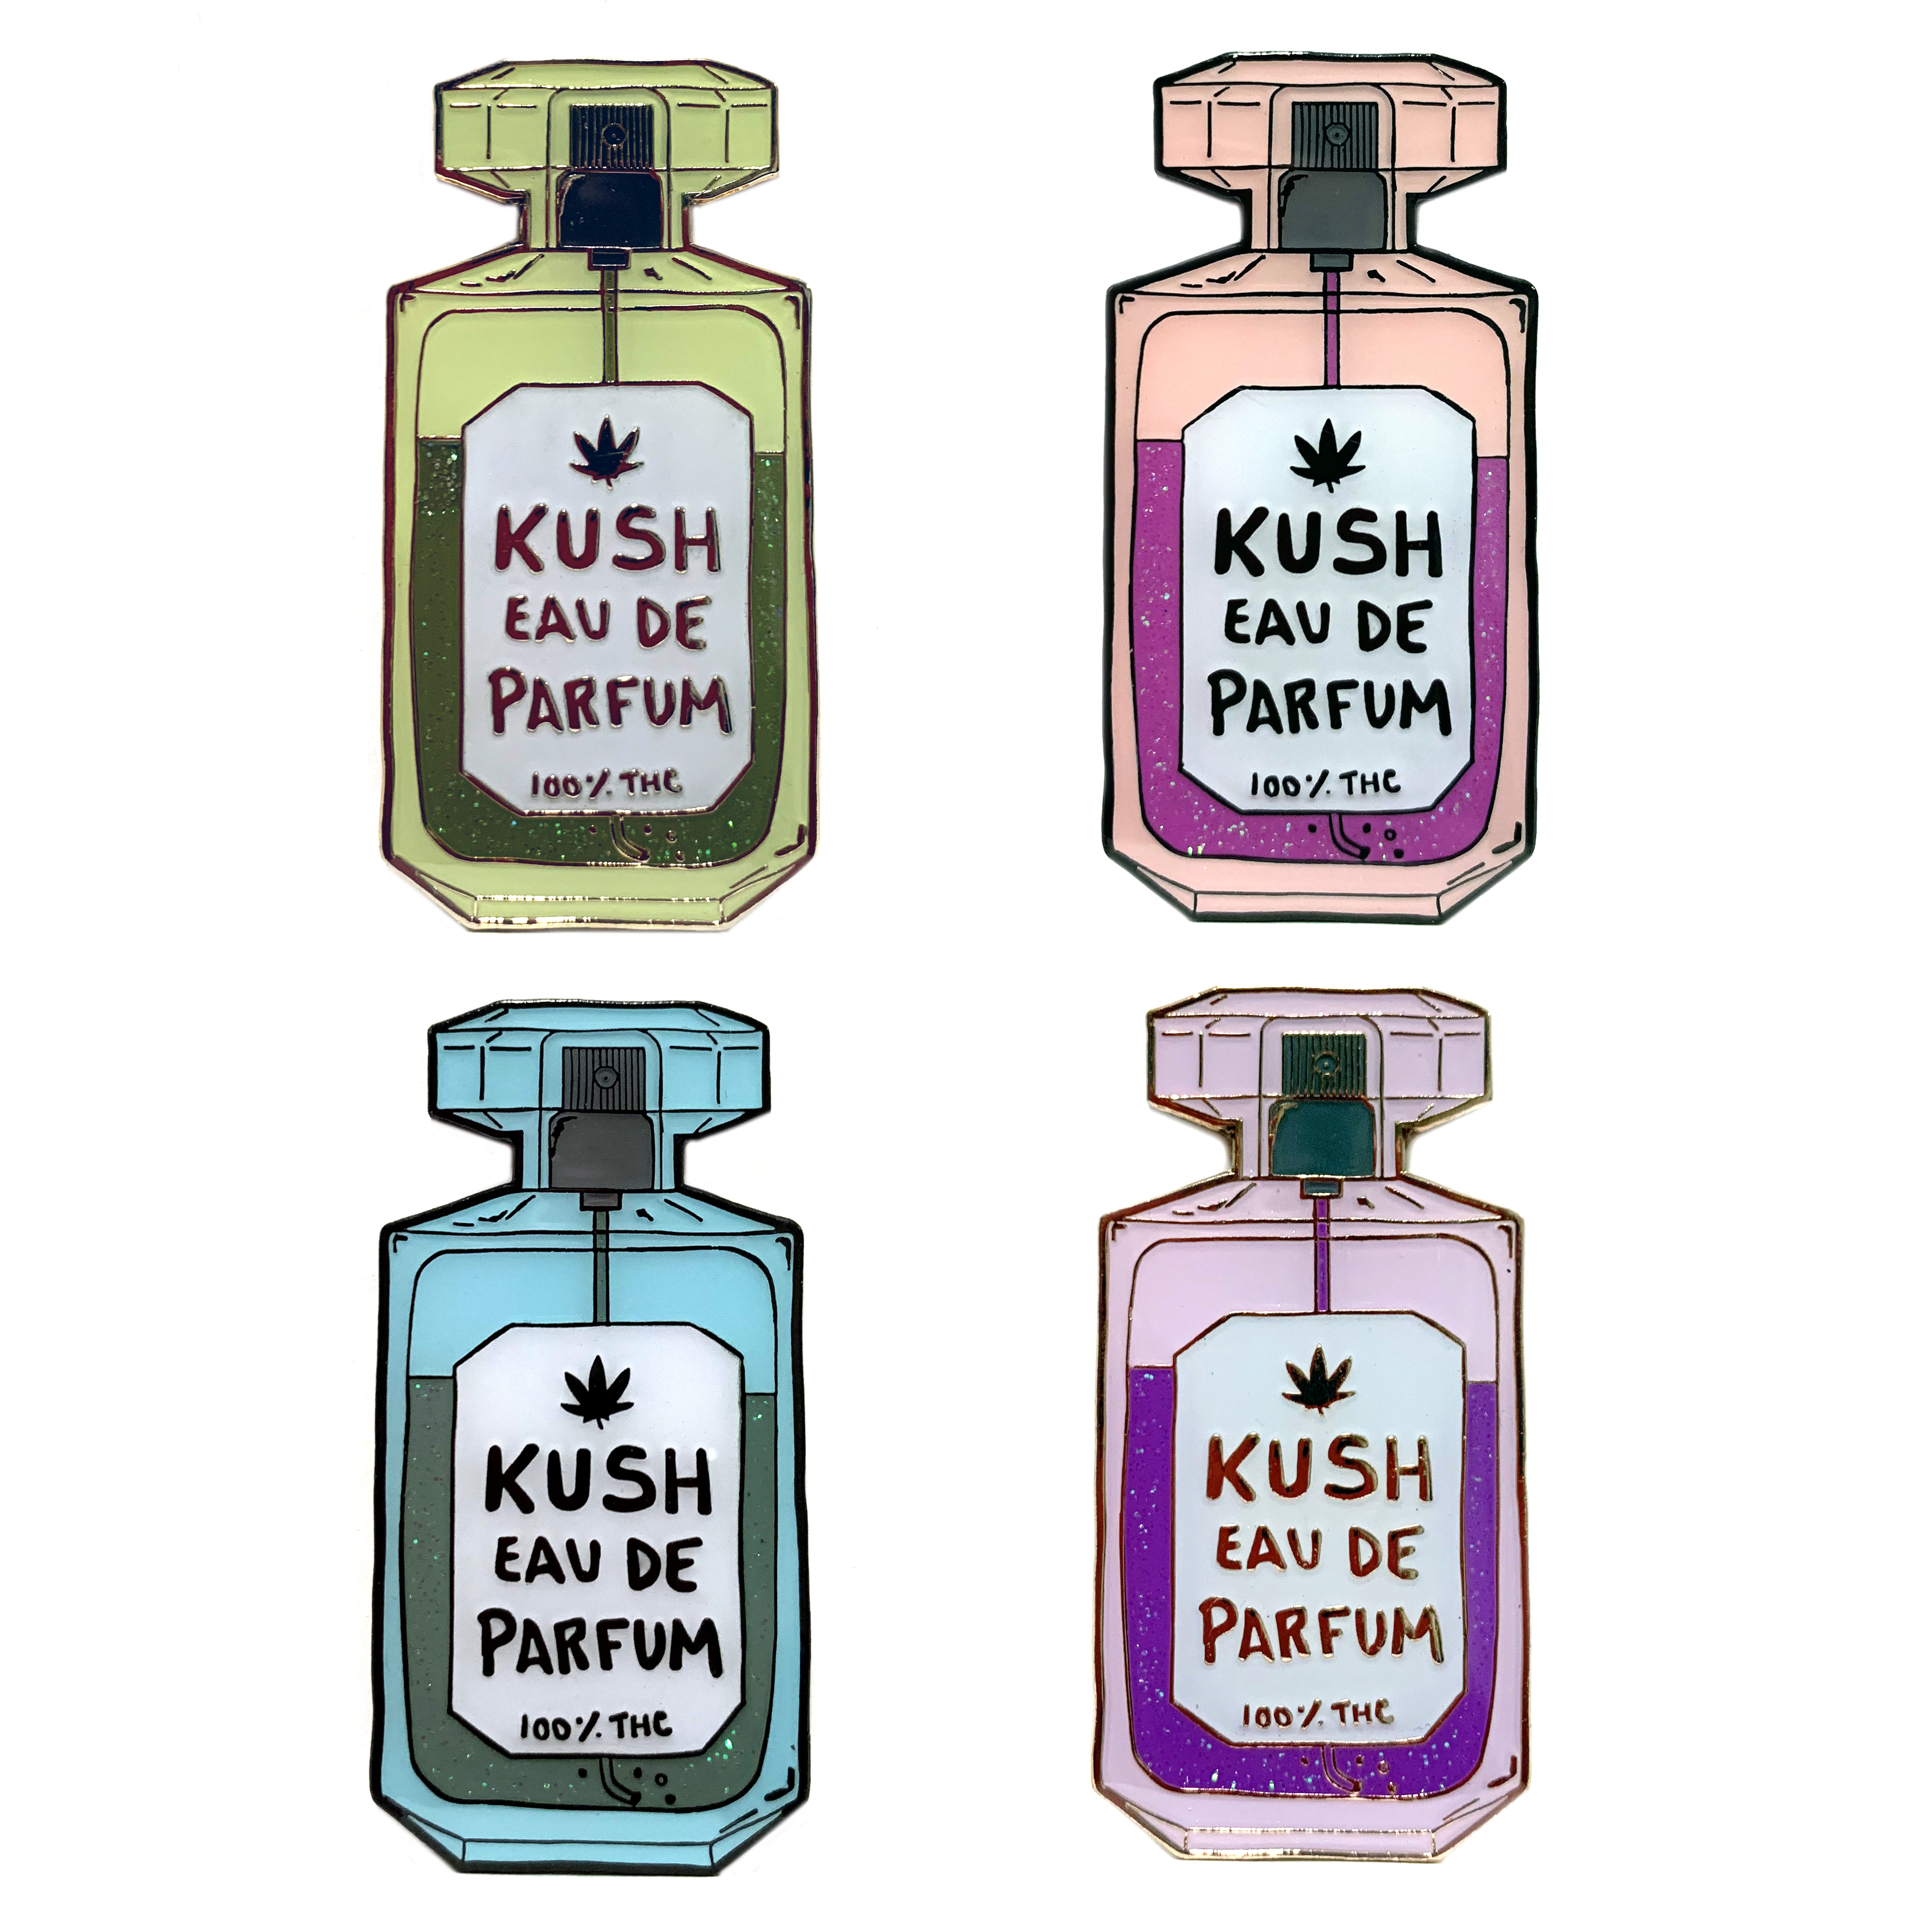 kush eau de parfum_hat pin_set